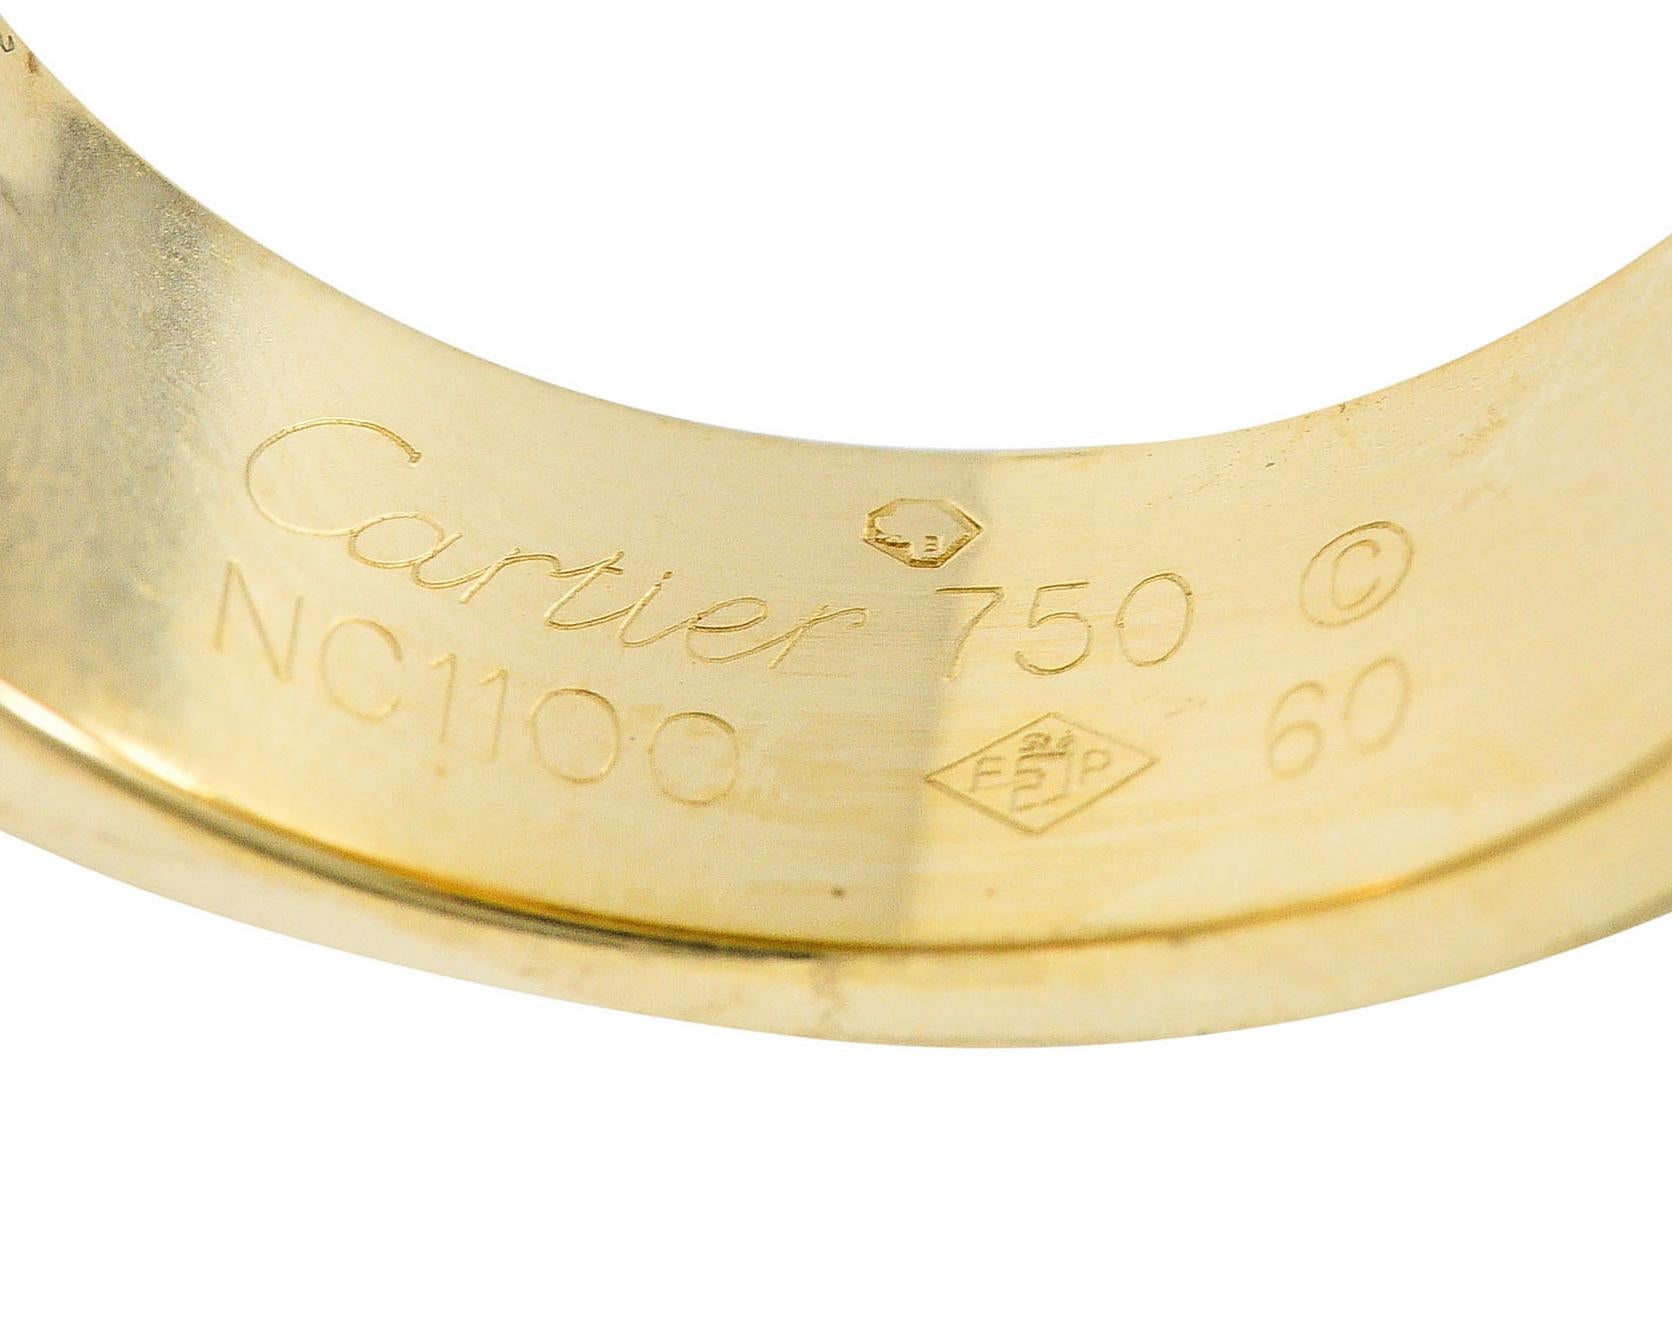 Uncut Cartier Tiger's Eye 18 Karat Gold Men's Cushion Santos Dumont Ring